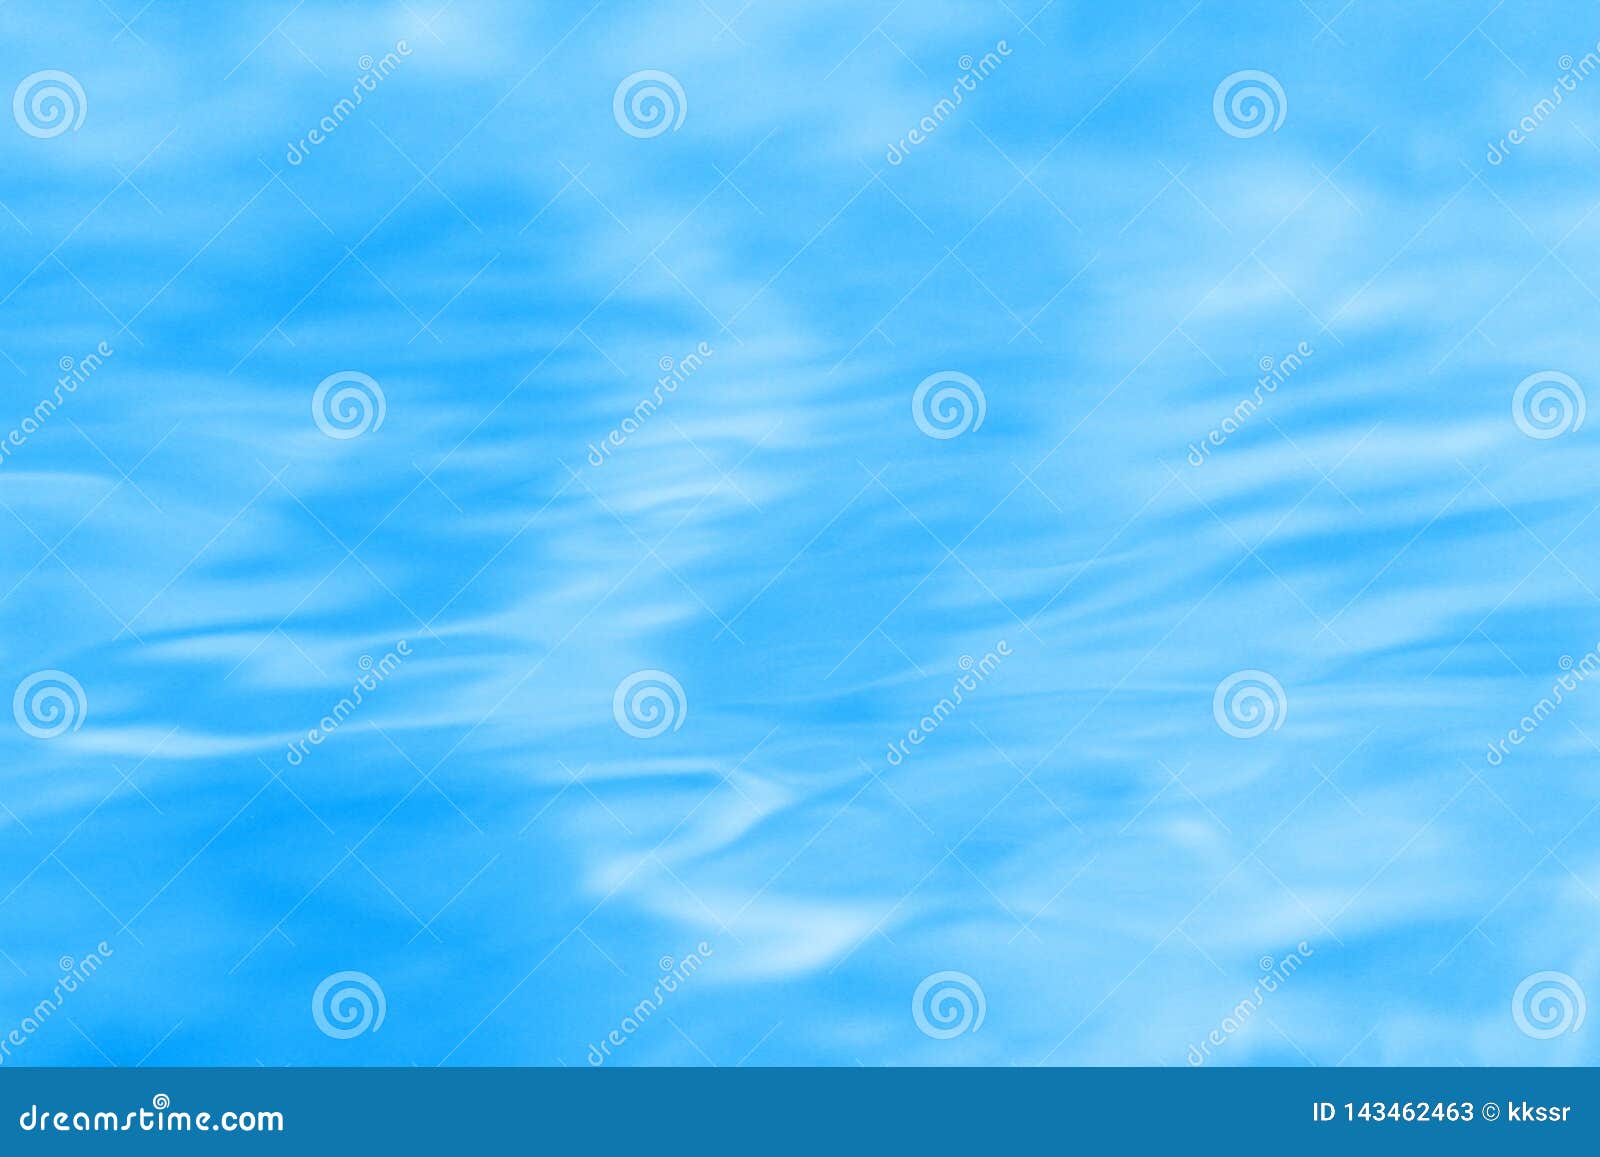 Hình ảnh mặt nước gợn sóng màu xanh nhạt 3D sẽ làm bạn cảm thấy như được đưa tới bãi biển xinh đẹp, tắm mát và thư giãn. Thật thú vị khi nhìn thấy con sóng từng bùng phá và làn nước tràn trề sức sống.